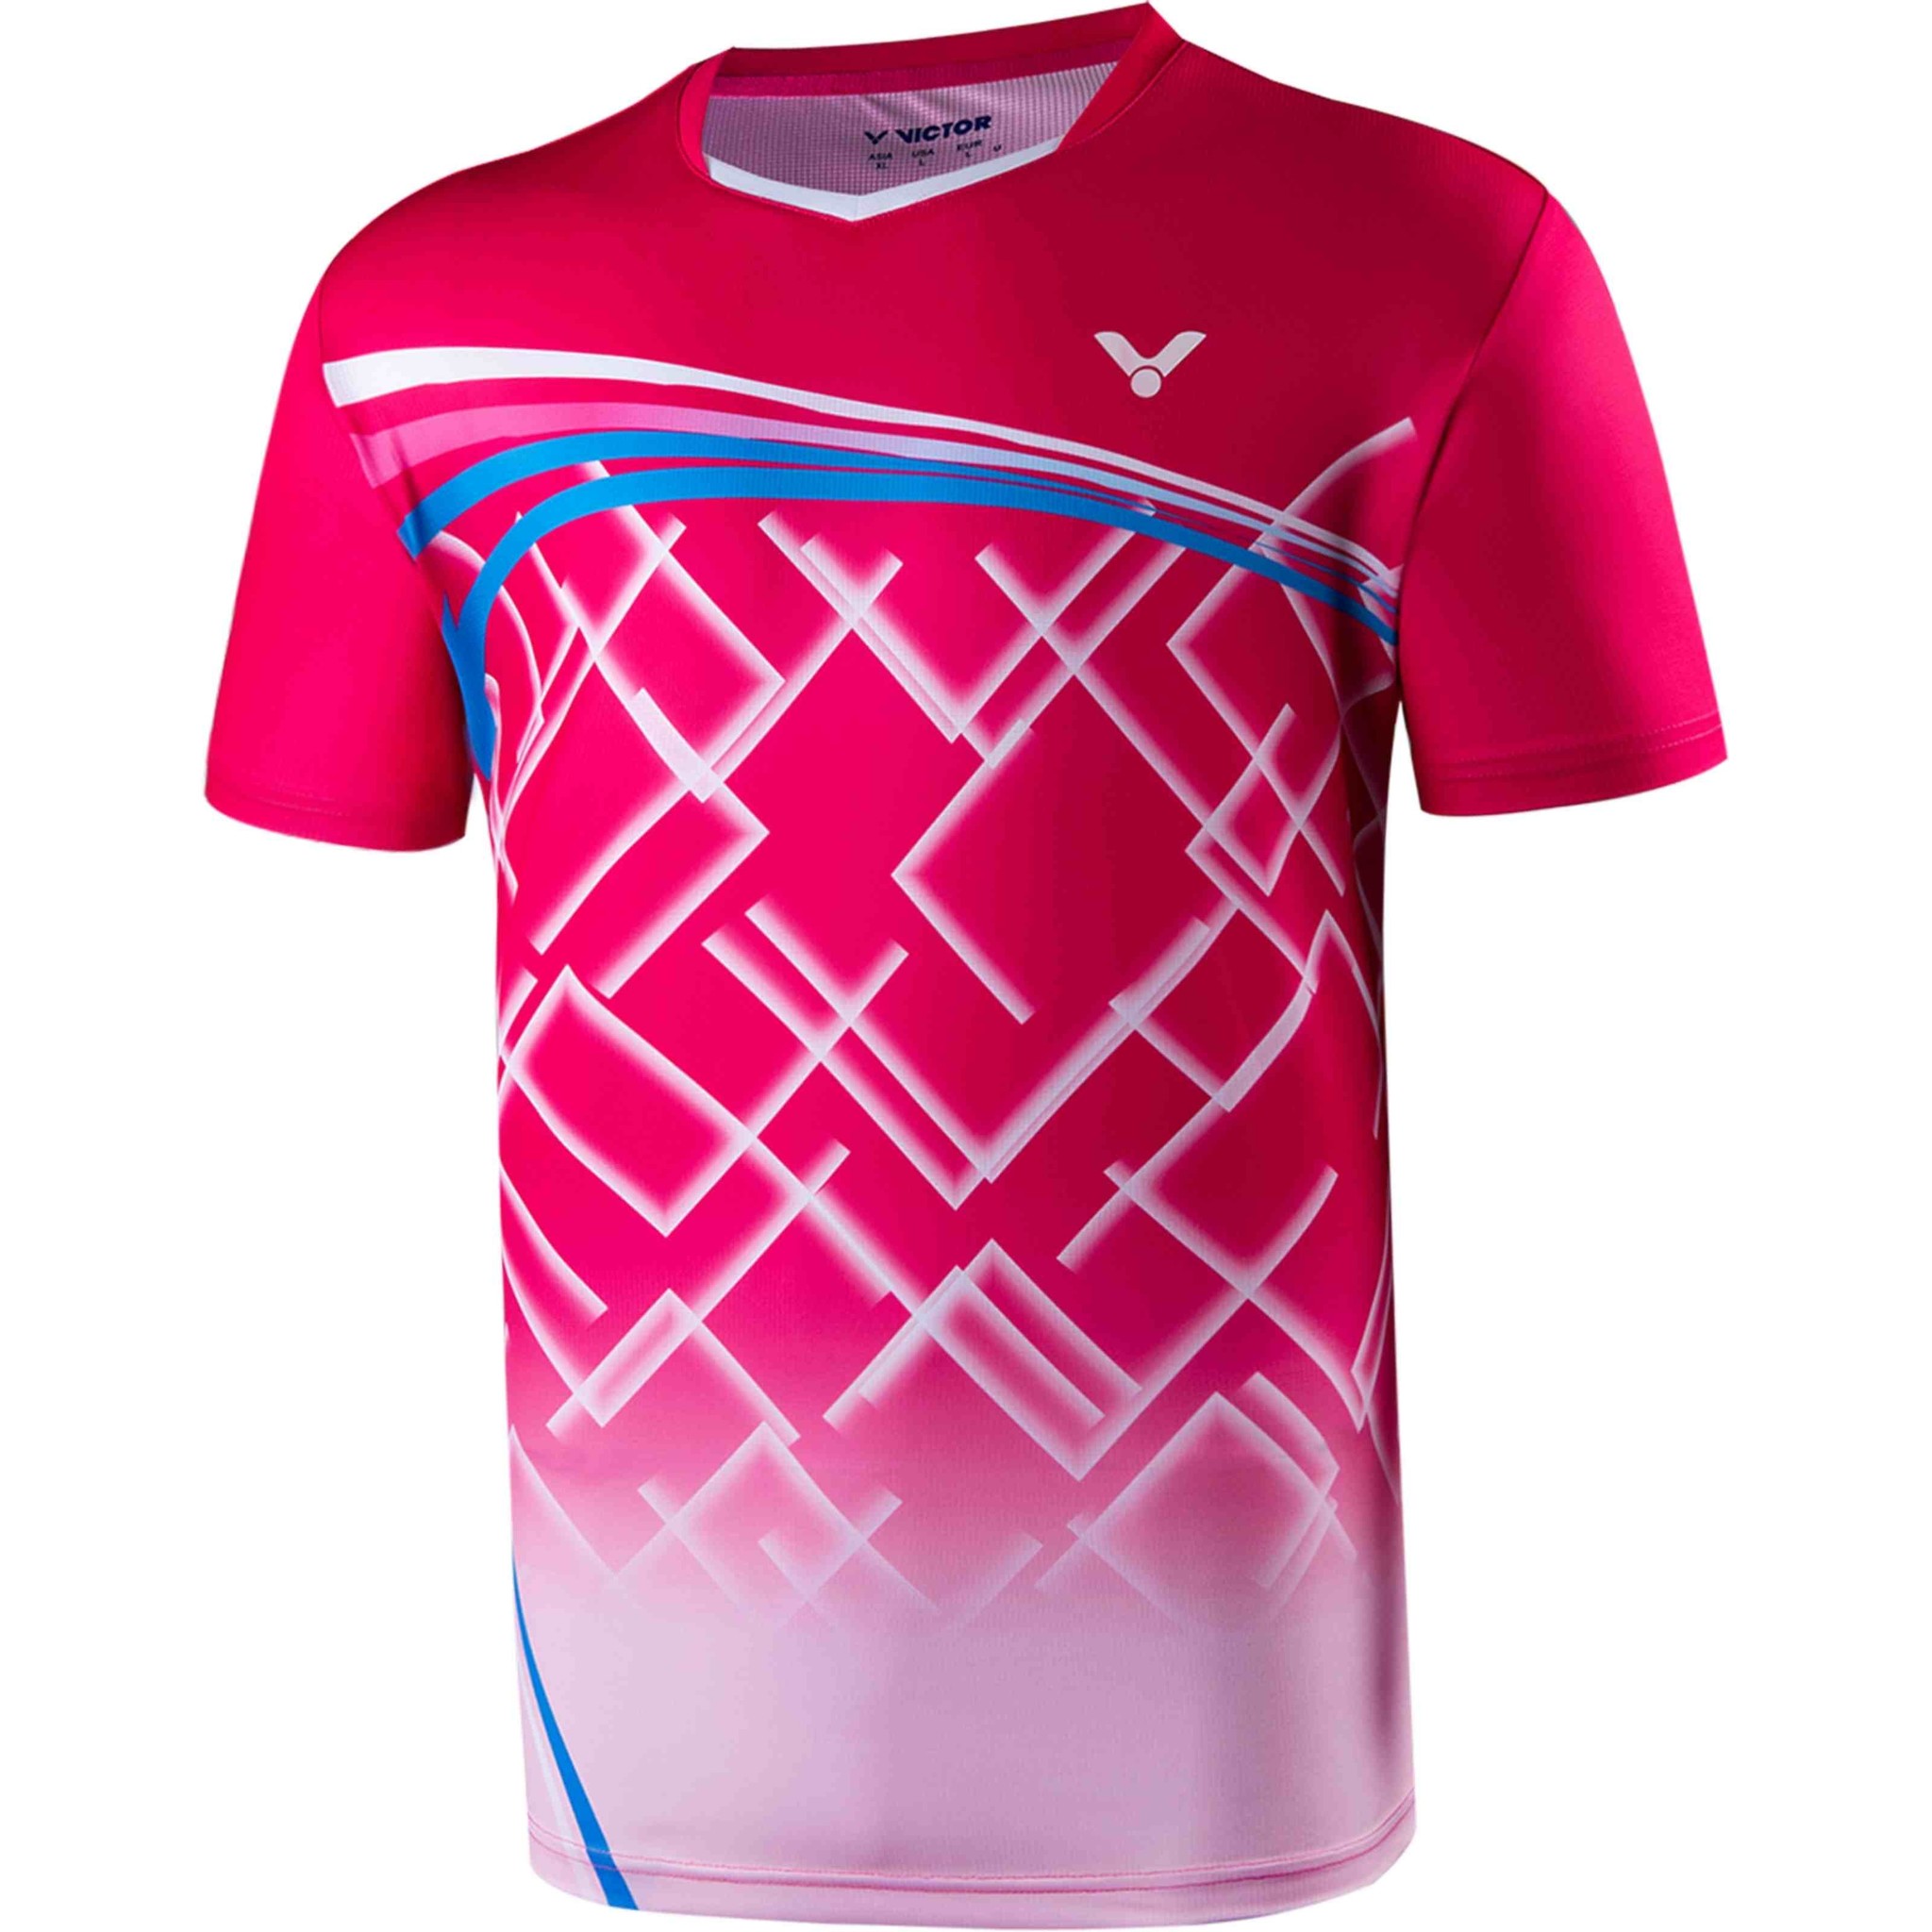 T-Shirt Unisex Q Pink kopen? - KW racket speciaalzaak